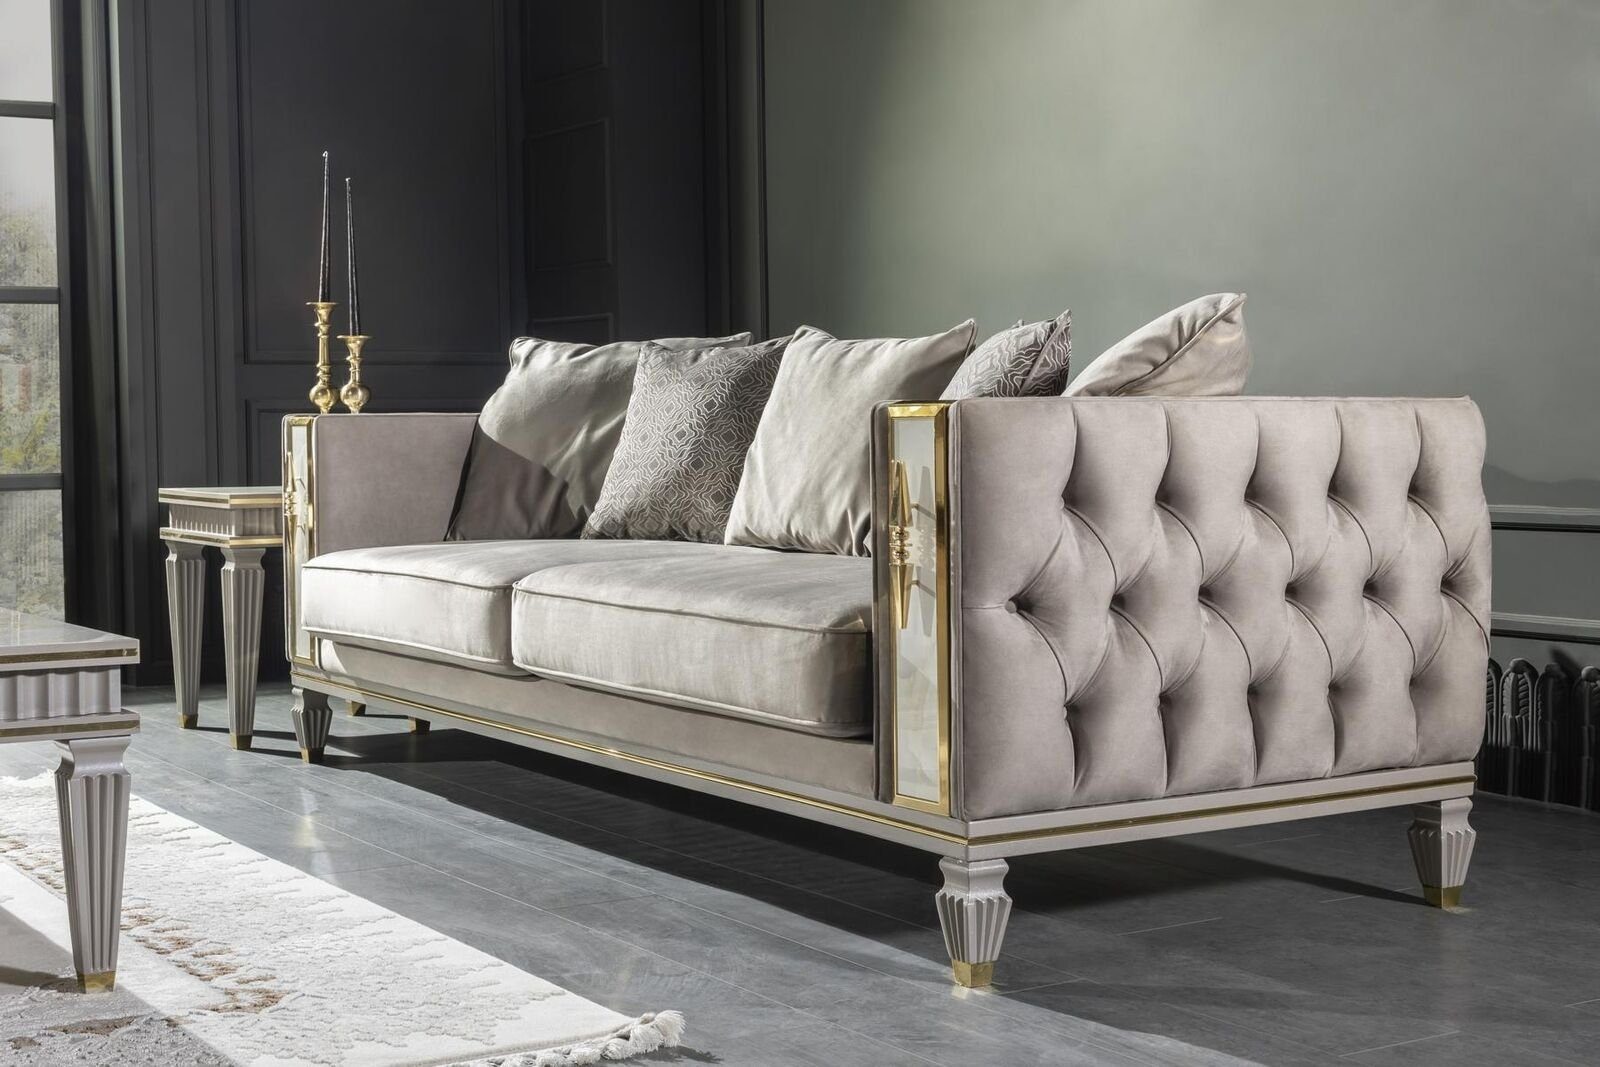 JVmoebel Wohnzimmer-Set Wohnzimmer Grau Sessel Couchtisch Sofagarnitur 2x Beistelltisch Luxus